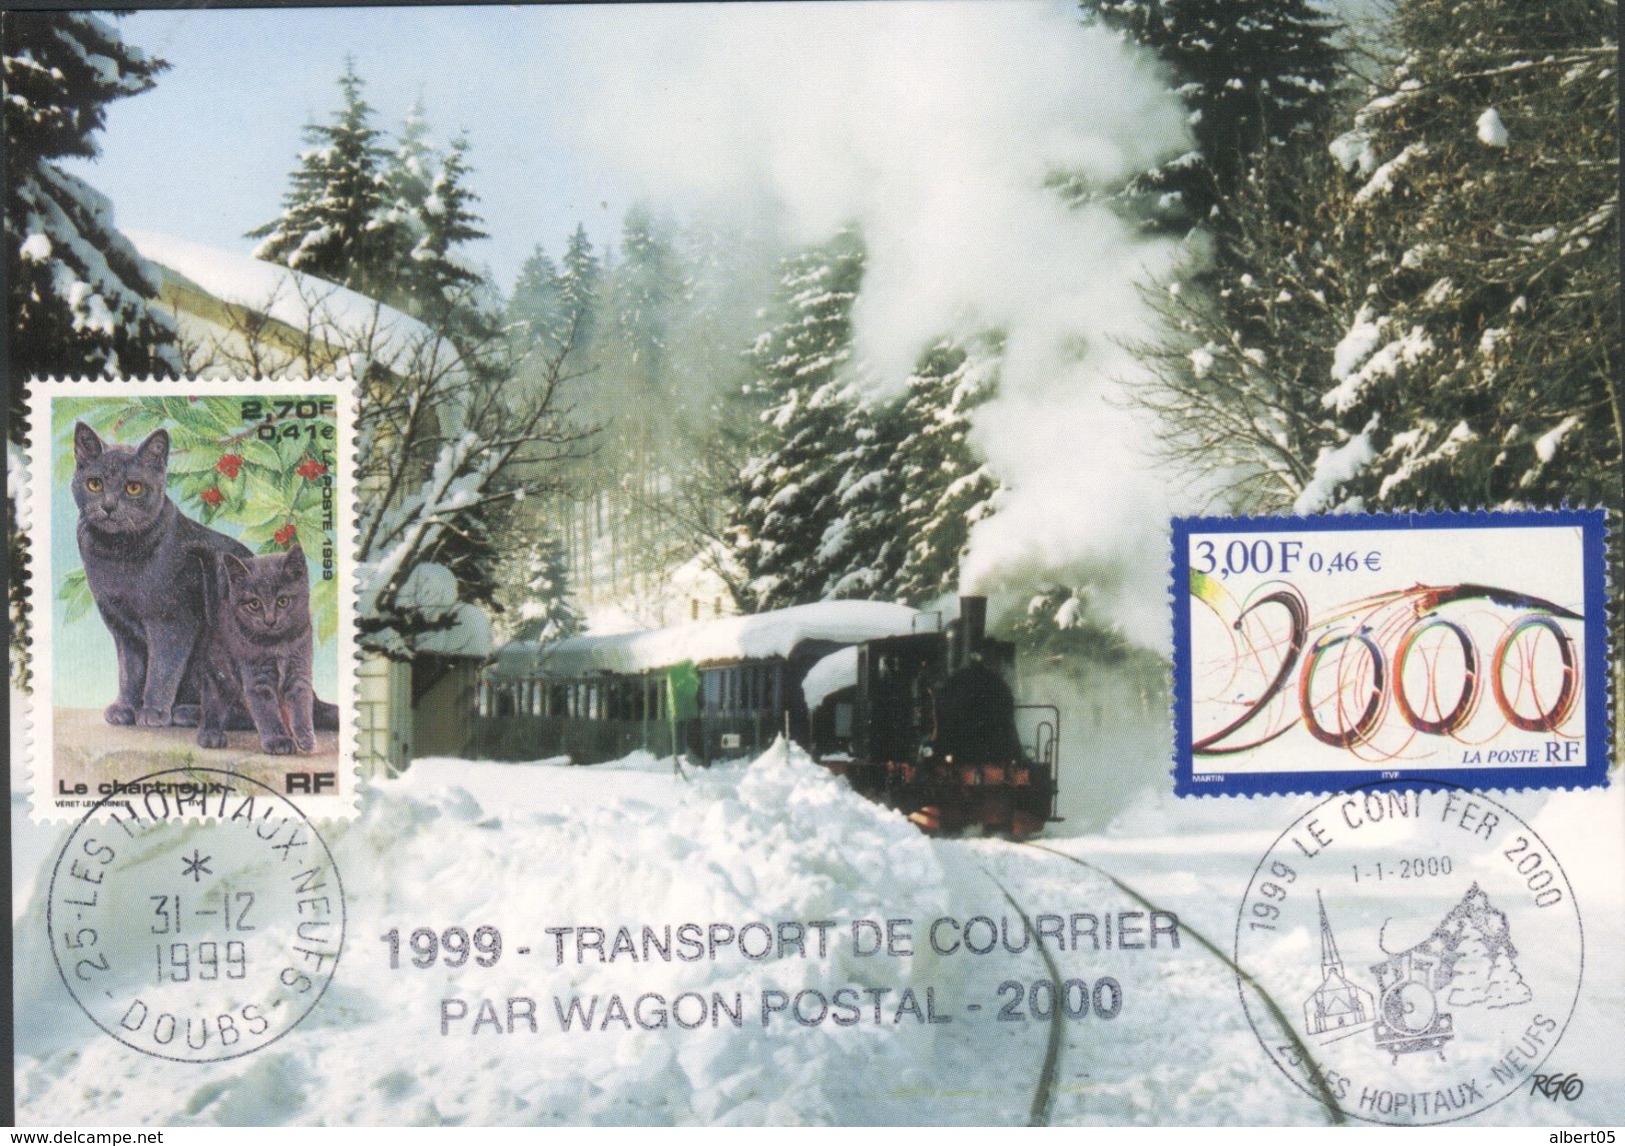 Transport De Courrier Par Wagon Postal - Chemin De Fer Touristique  Pontarlier-Vallorbe - Poste Ferroviaire